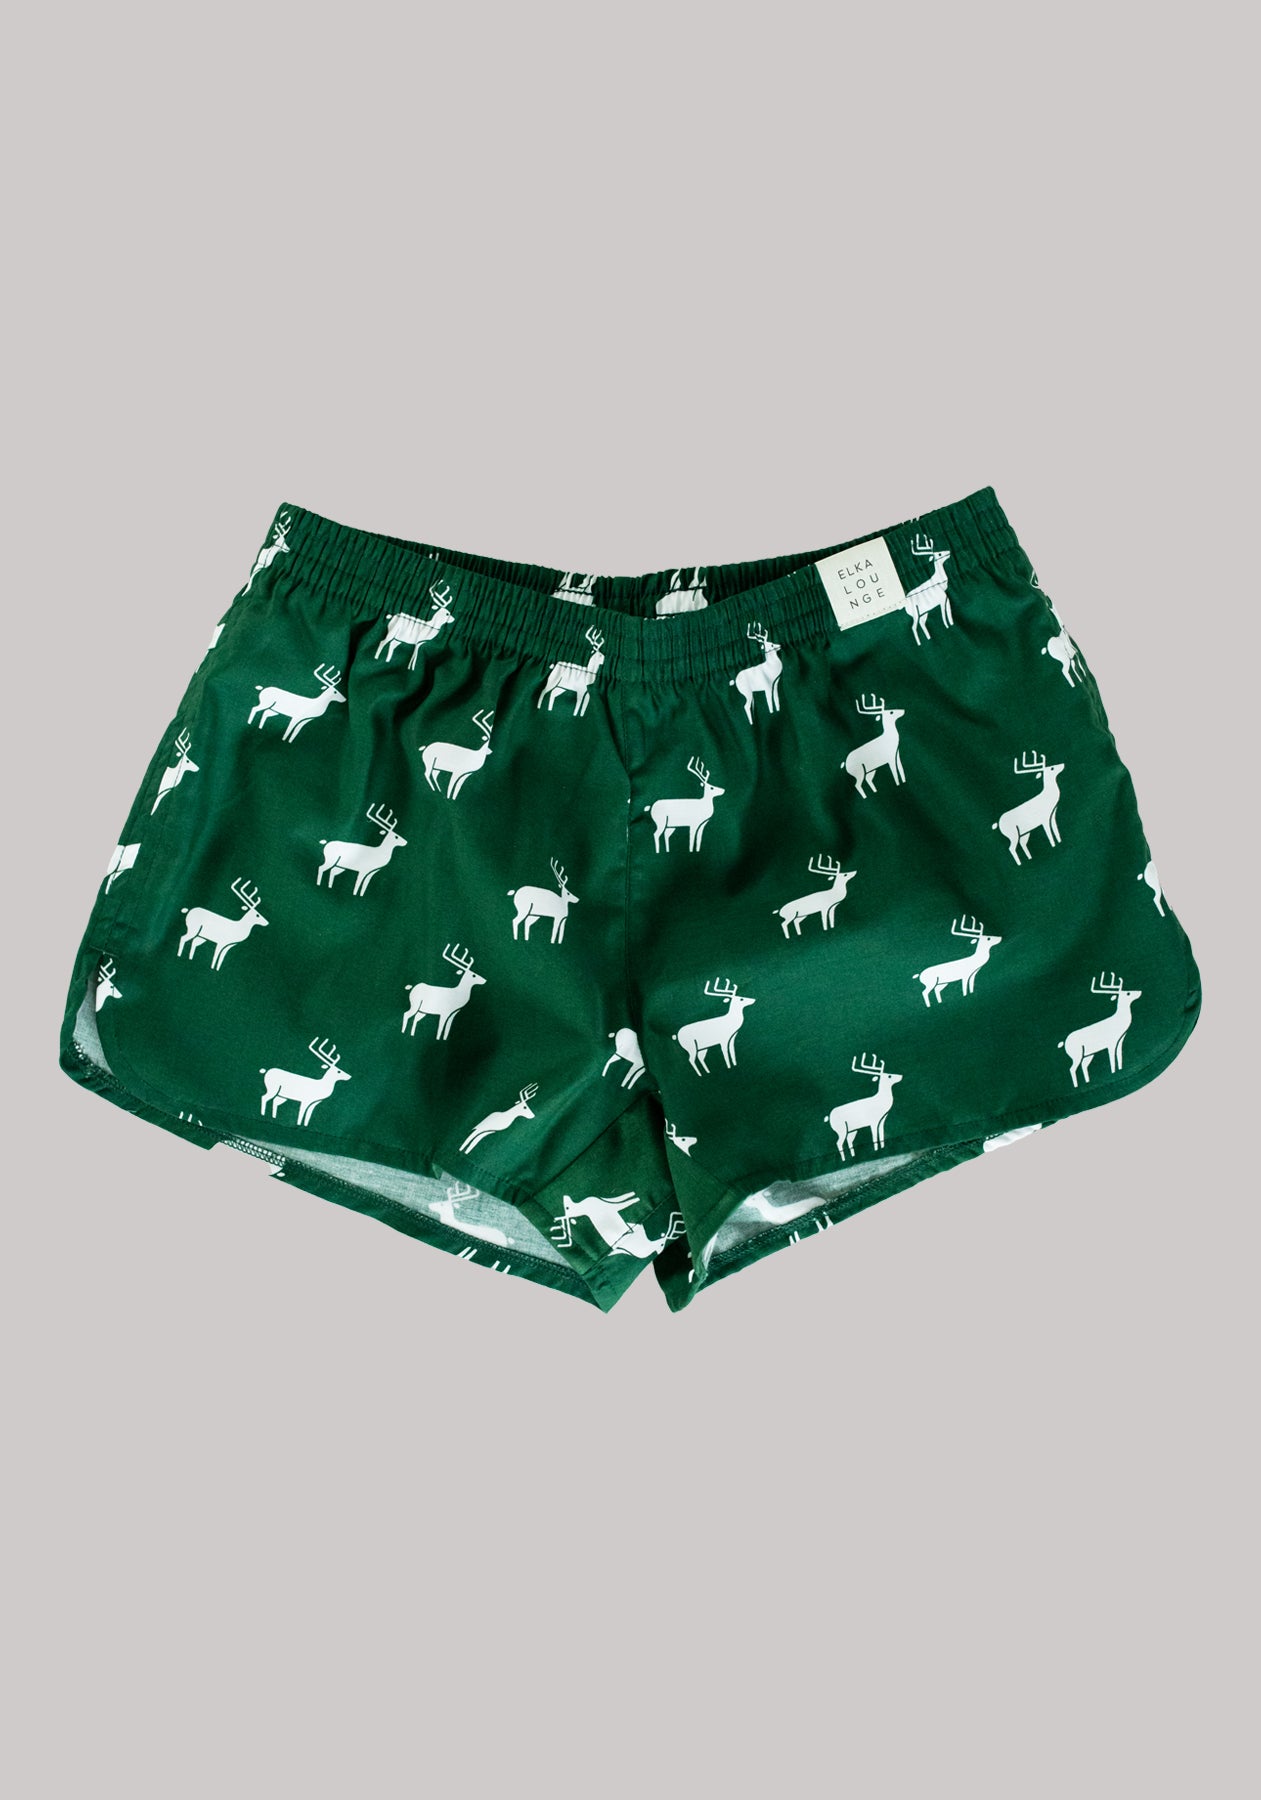 Women's shorts Emerald deers